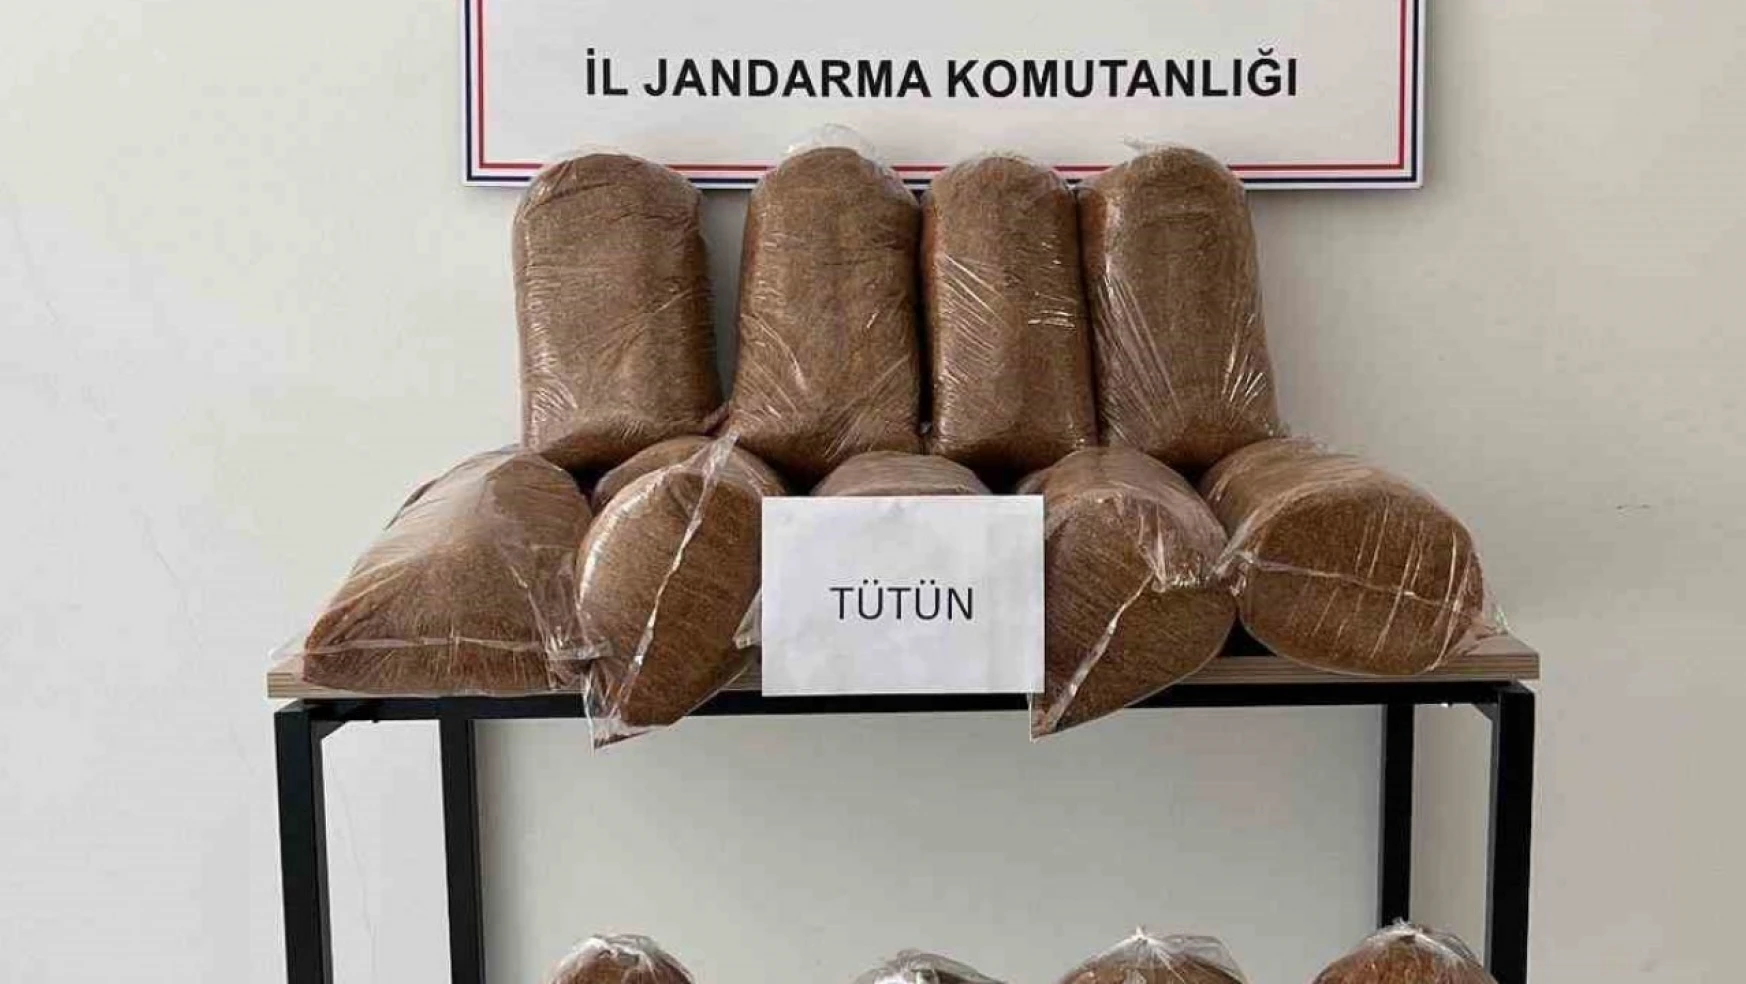 Elazığ'da 165 kilo kaçak tütün ele geçirildi